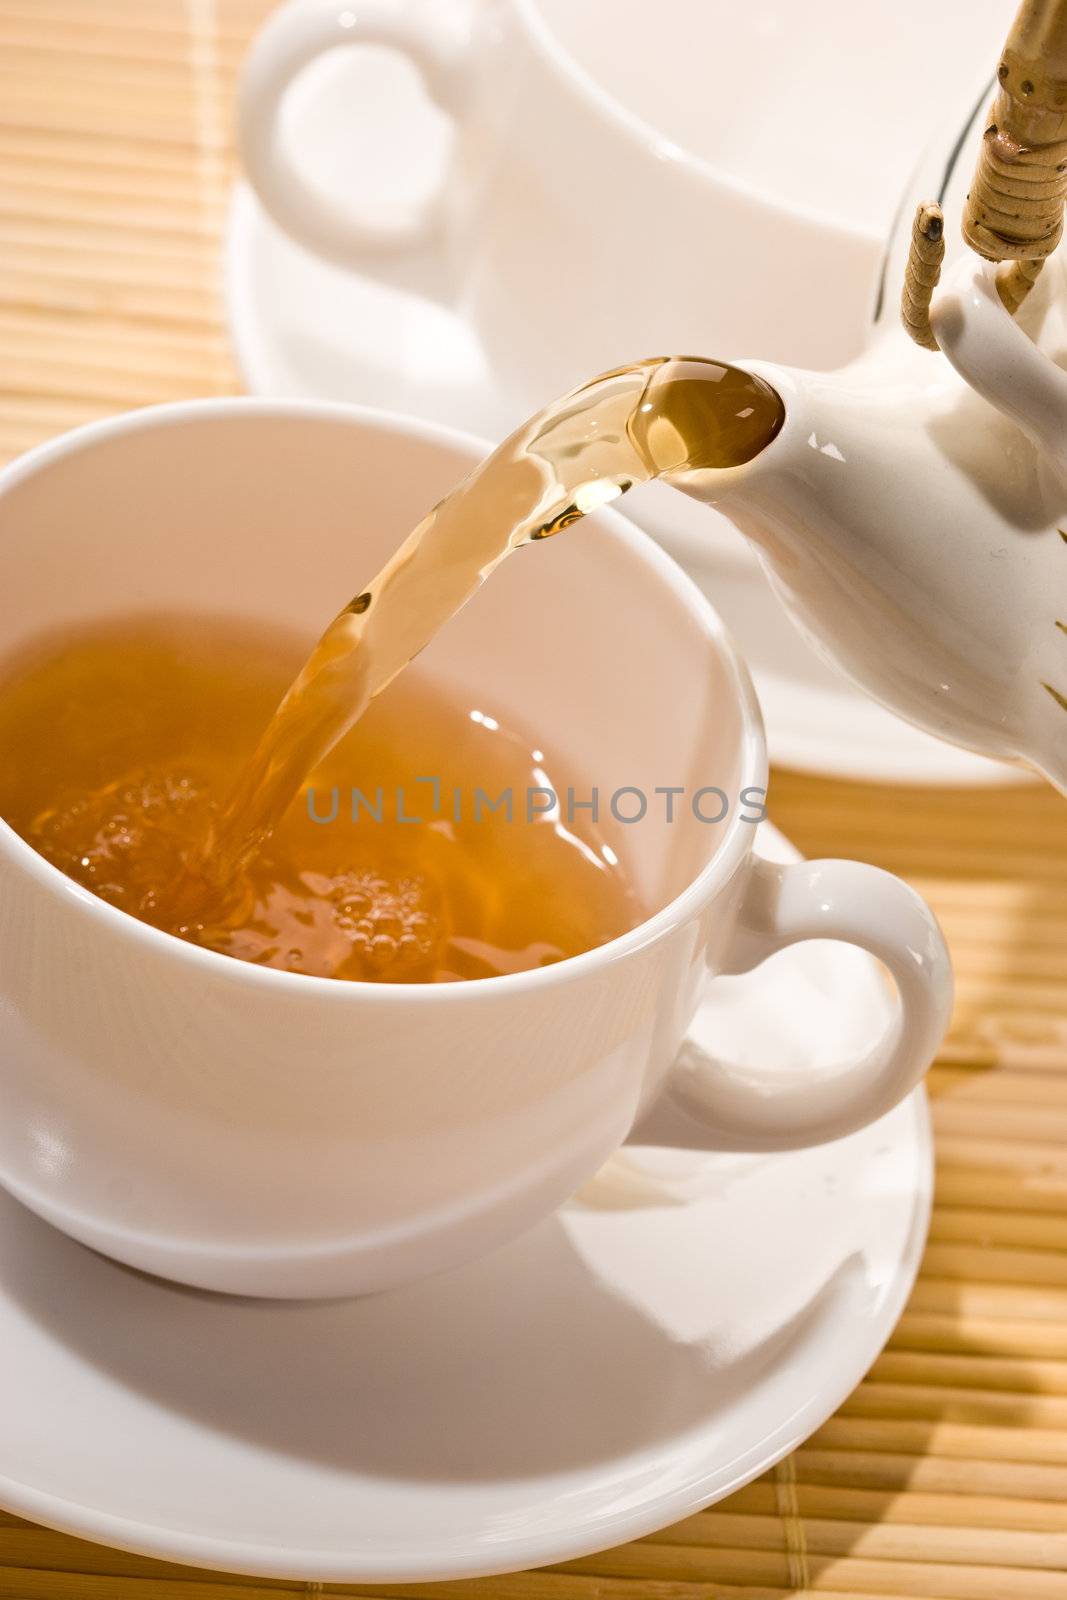 food series: flowing golden tea into cup